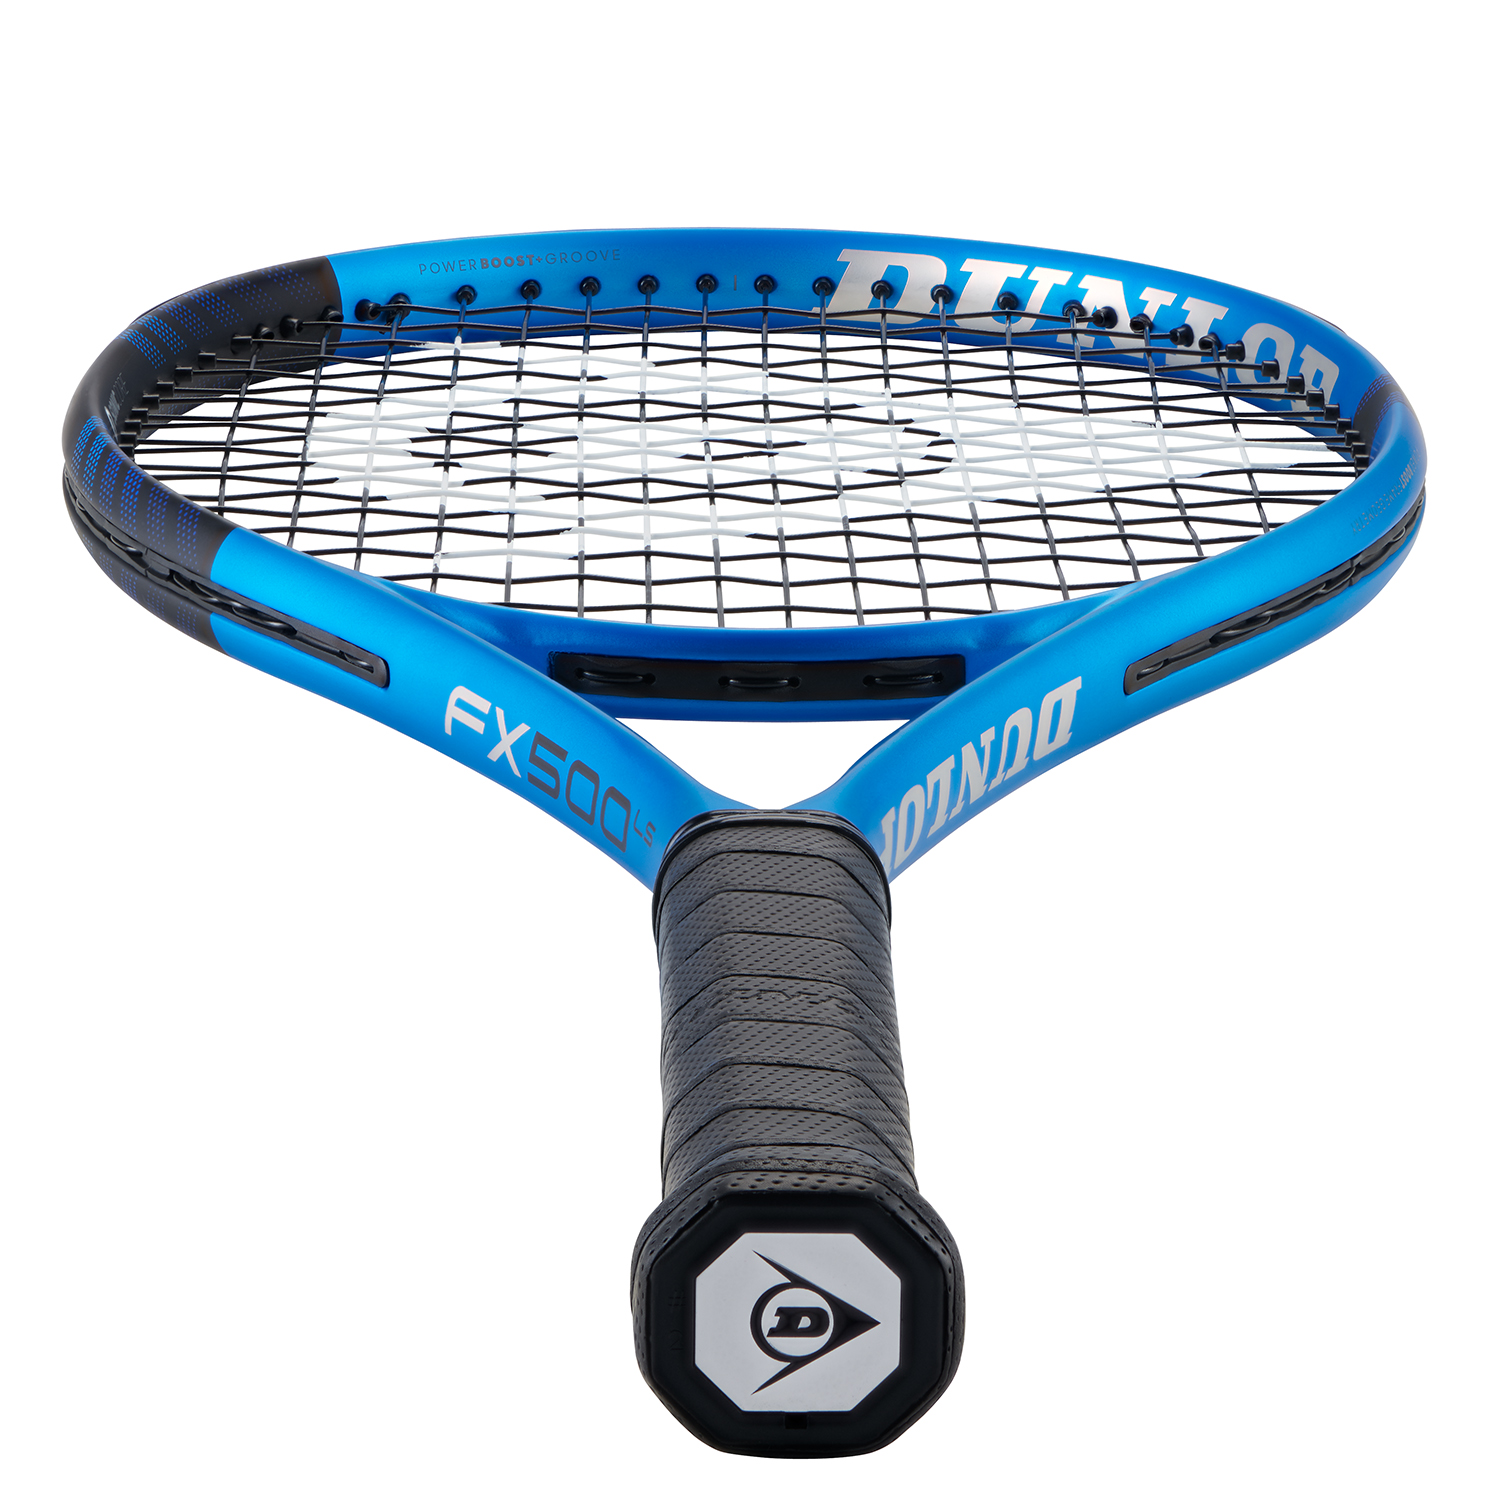 Dunlop FX 500 LS Tennis Racket